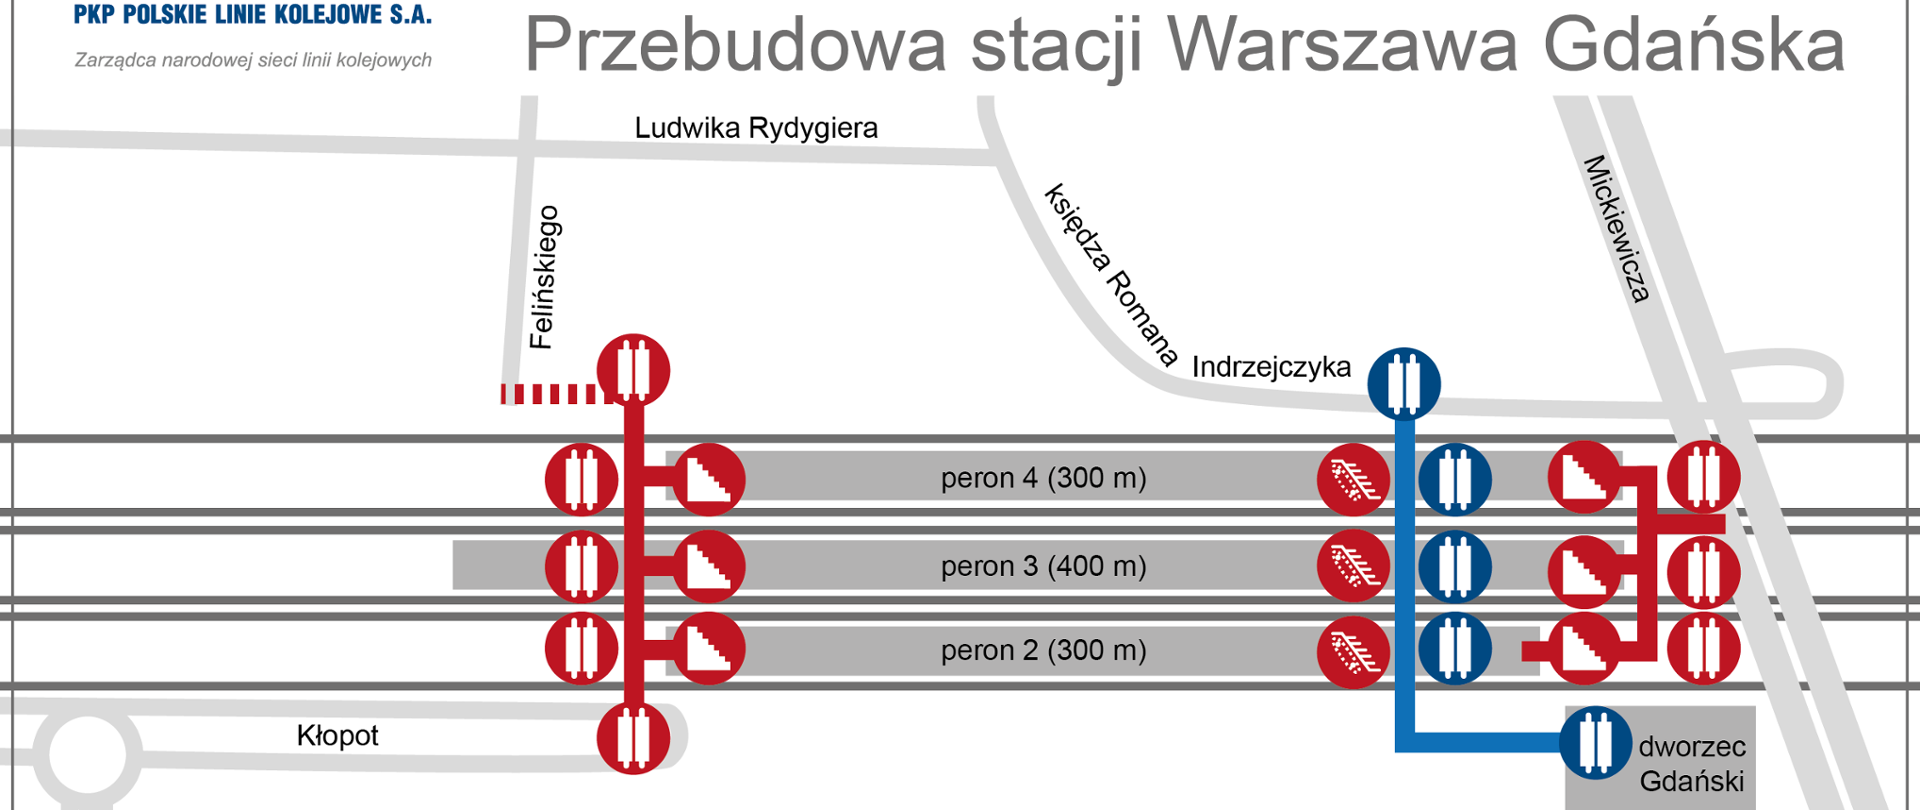 Warszawa Gdańska - infografika